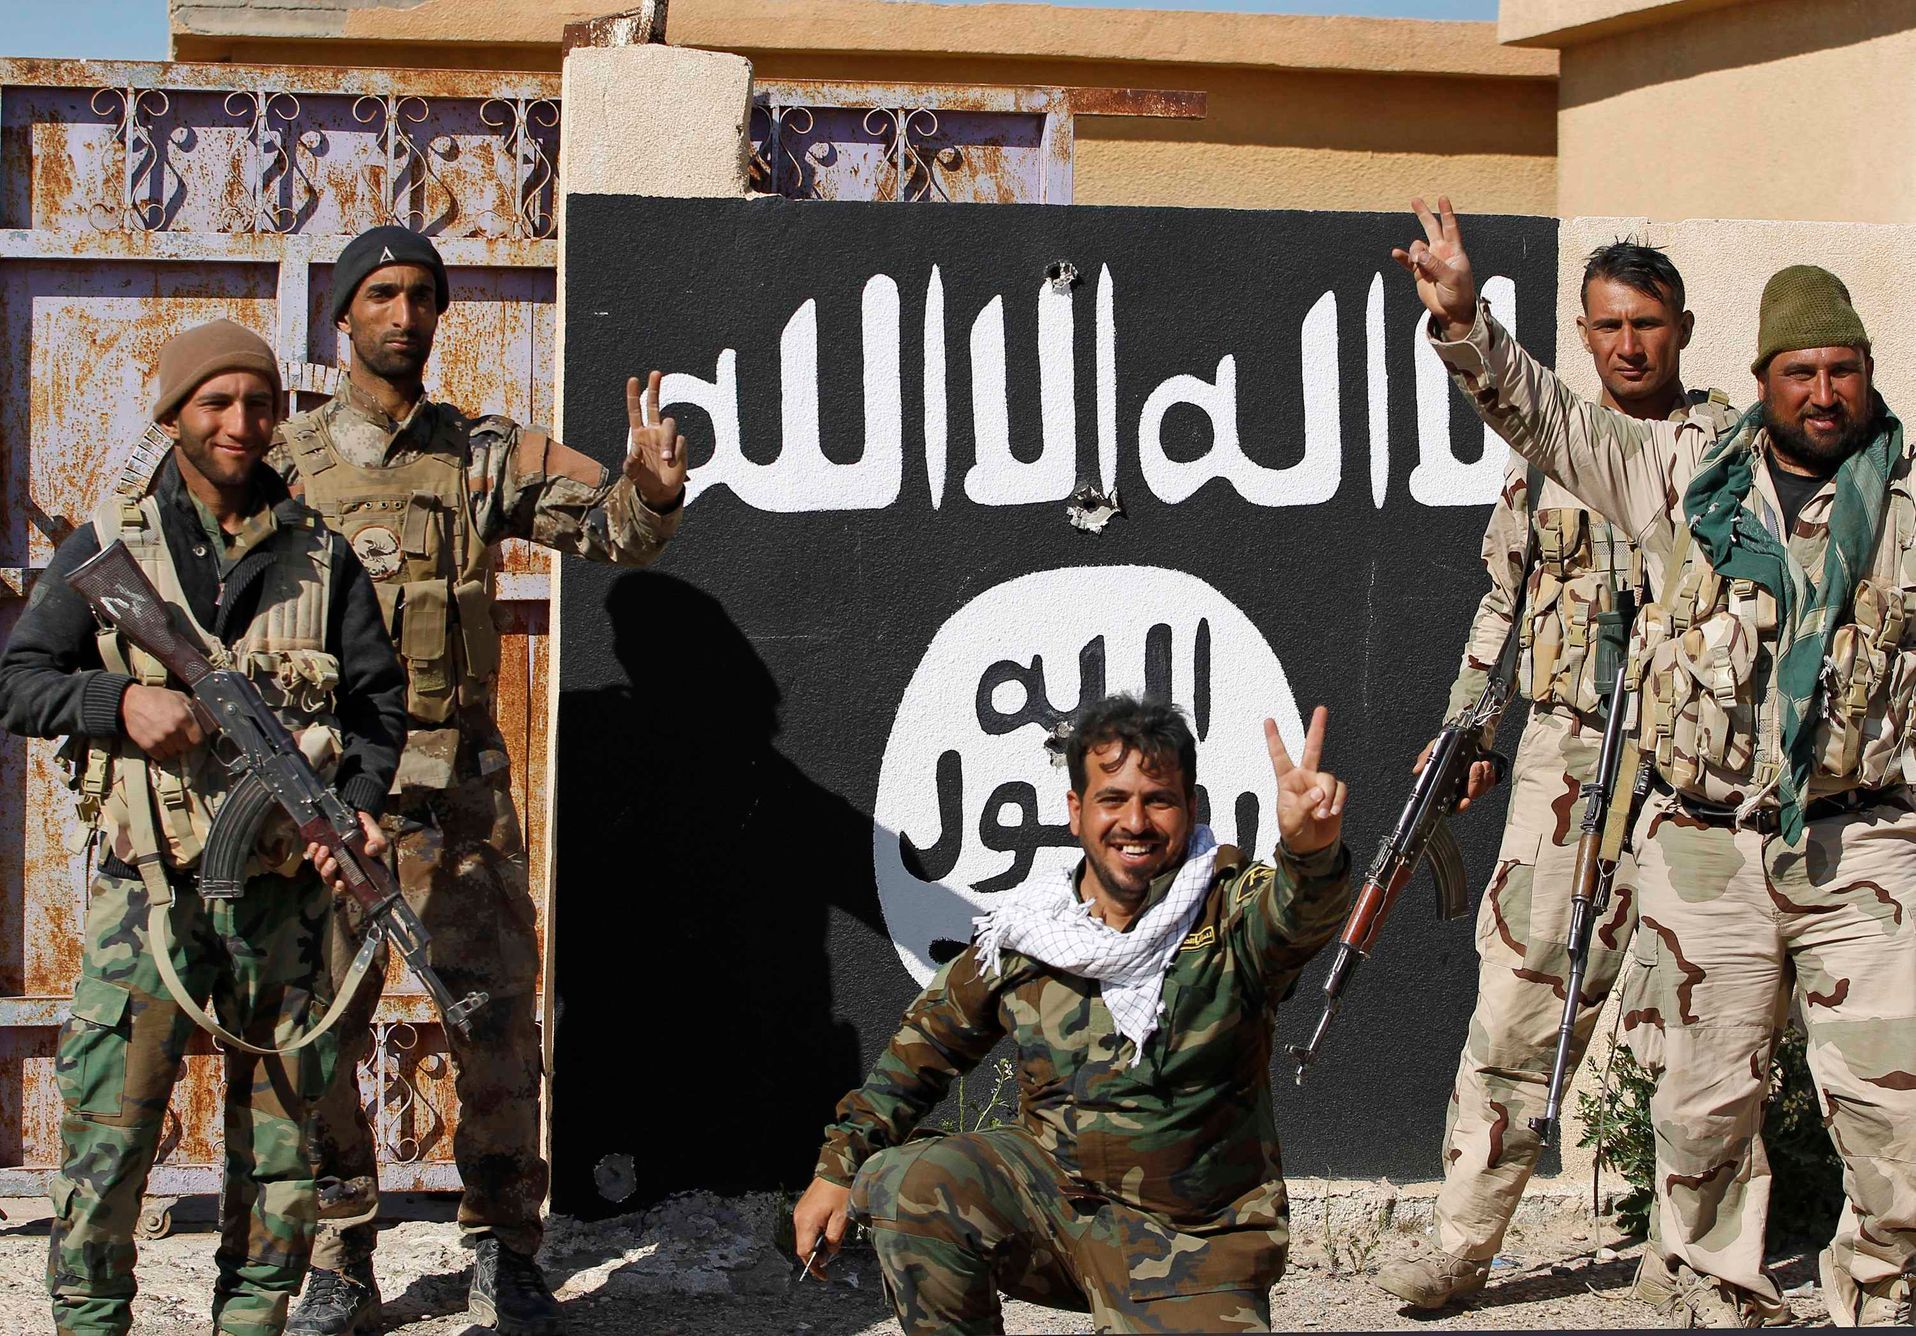 Irák - Islámský stát - šíitské milice